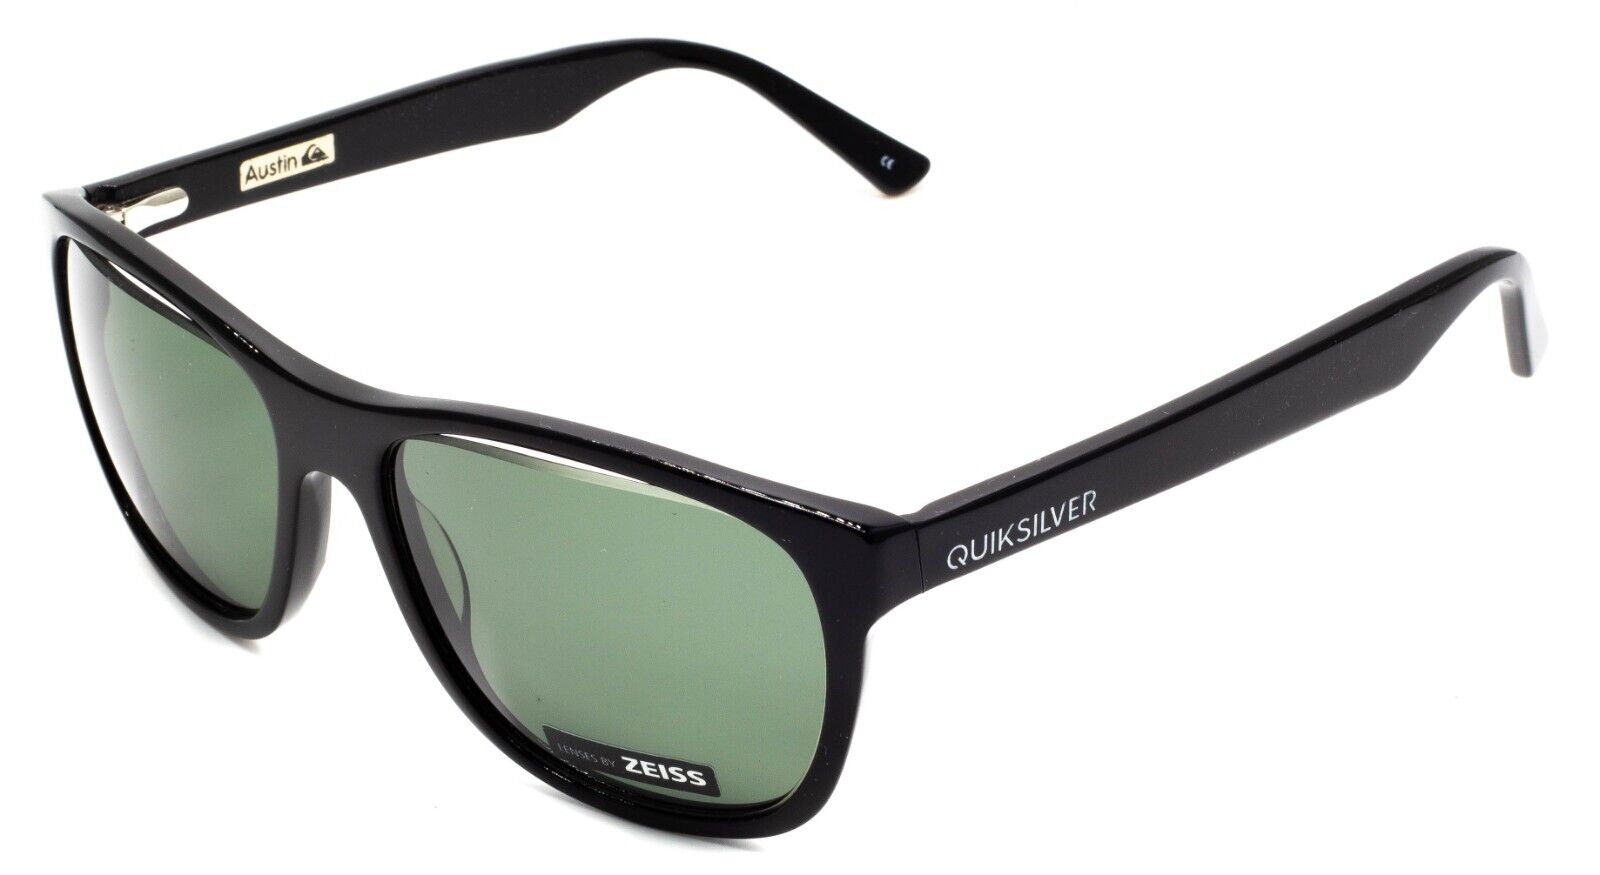 Quiksilver sunglasses